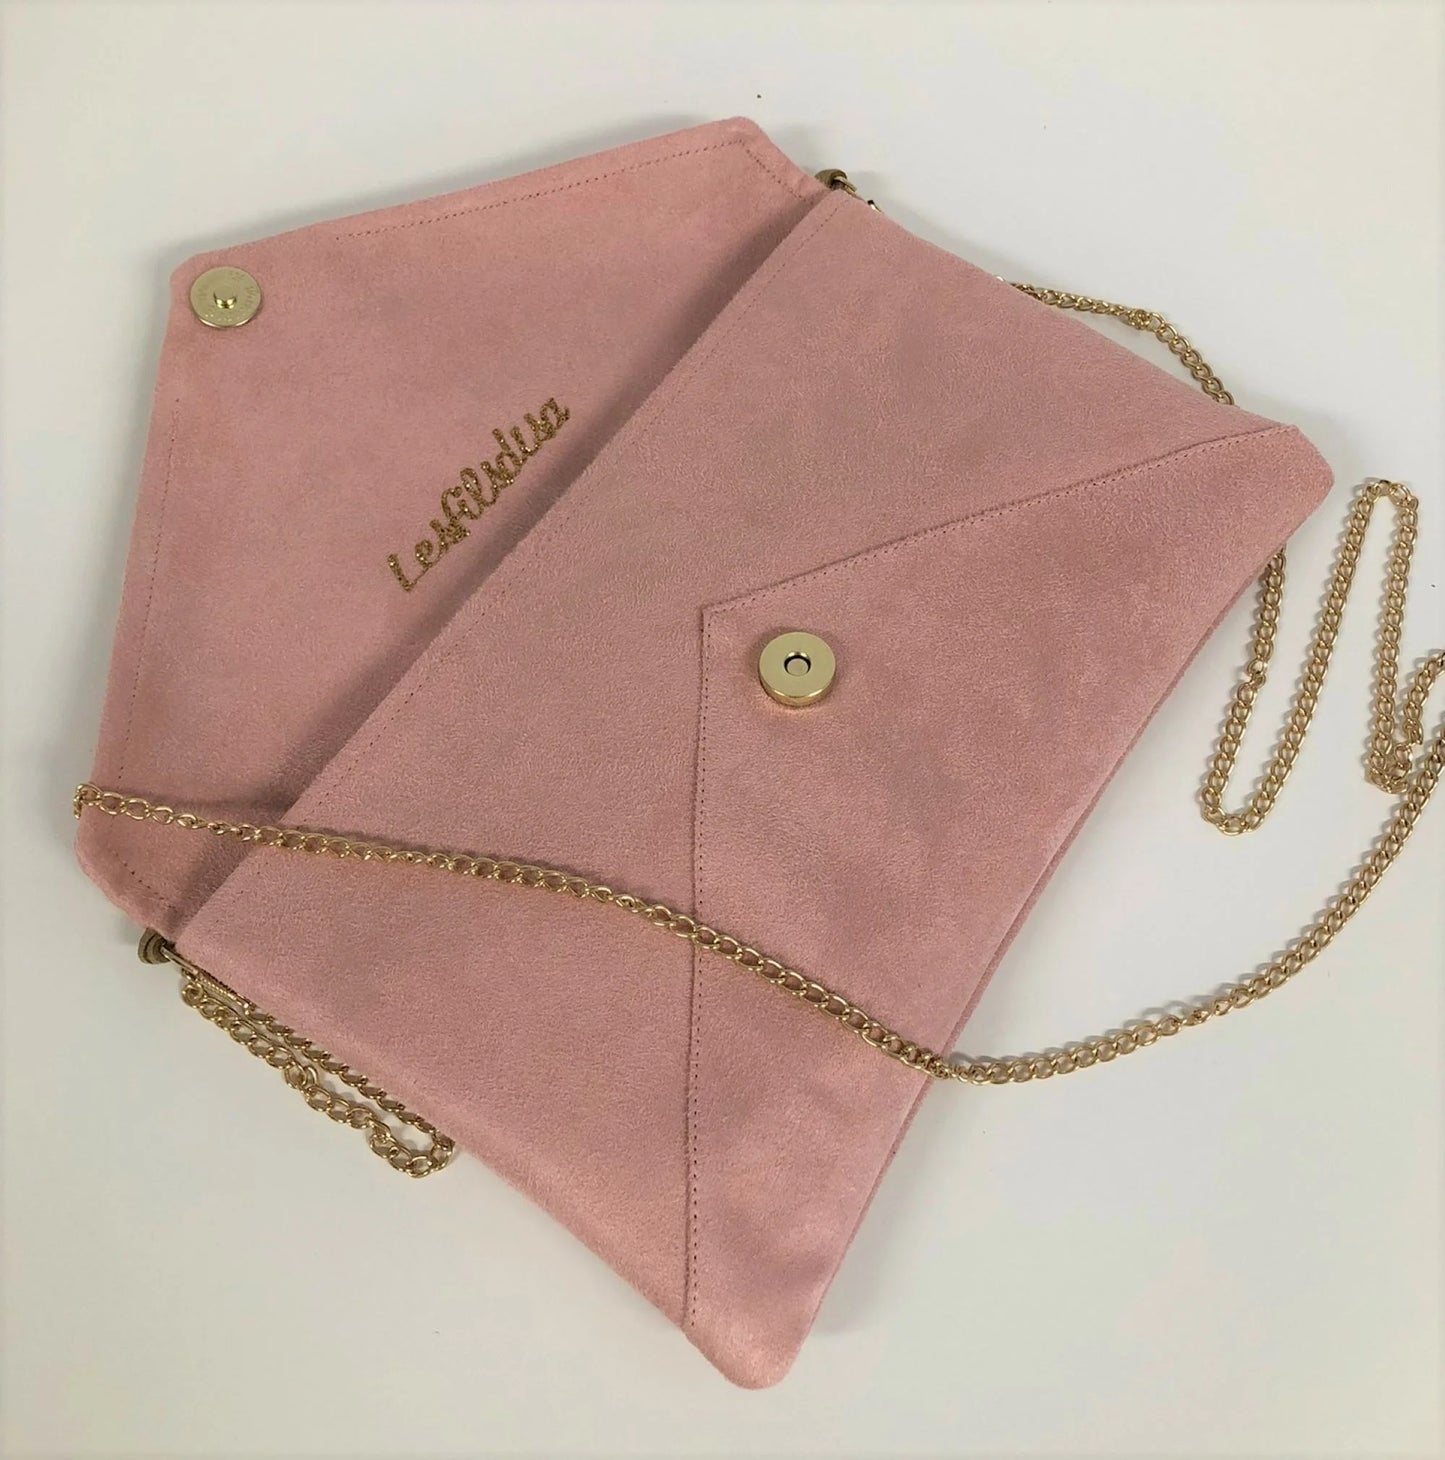 Le sac pochette Isa rose poudré à paillettes dorées, ouvert